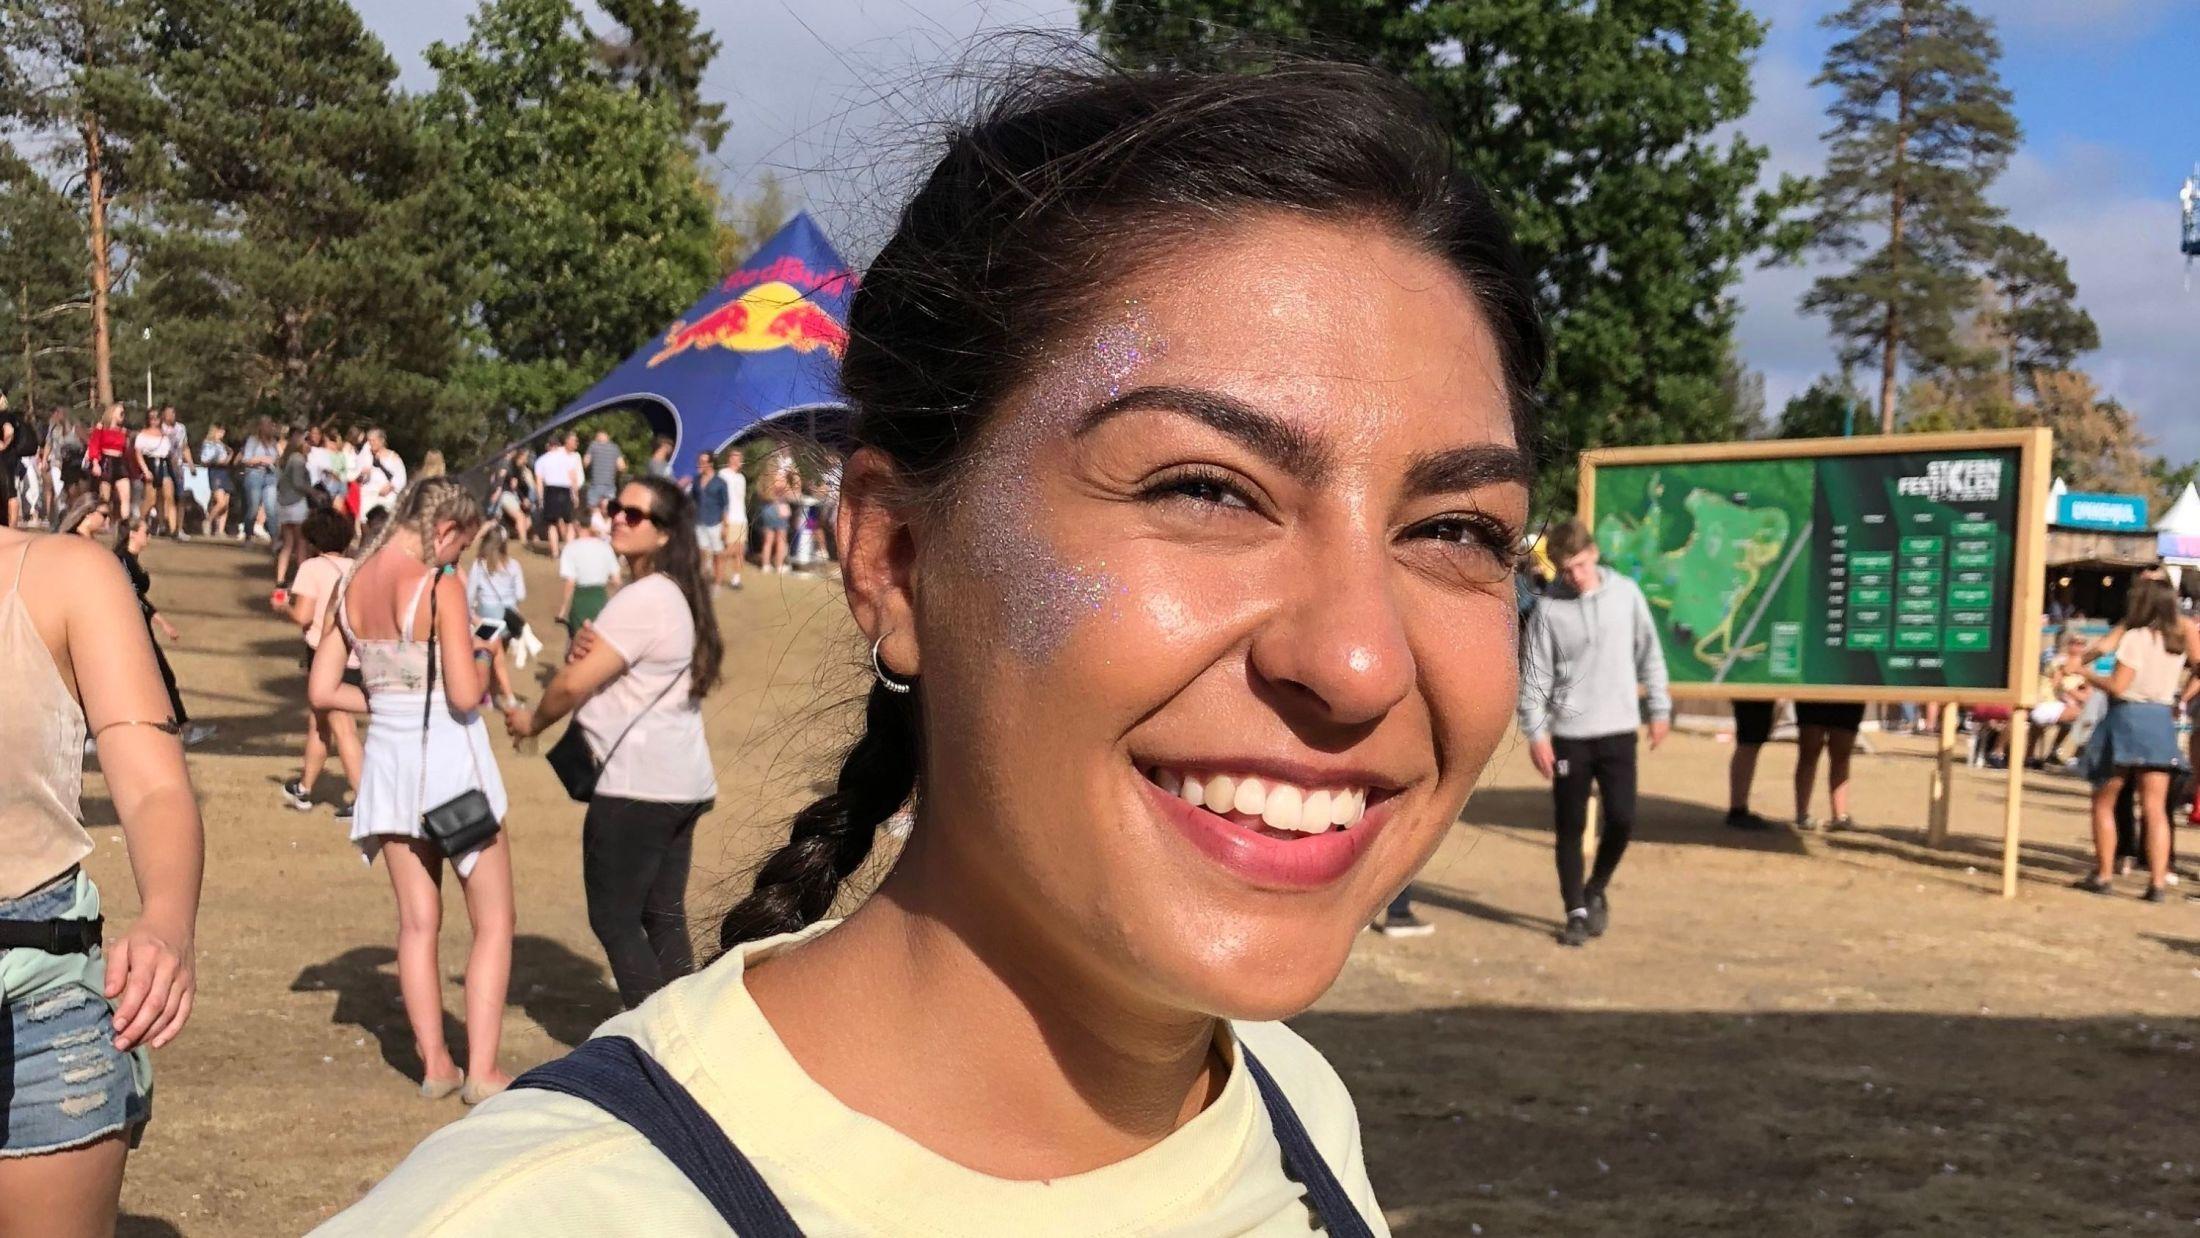 GLITTER: Det var mange unge mennesker som hadde pyntet seg ekstra for festivalen i år. Shadi Alipour (19) hadde glitter i ansiktet for anledningen.